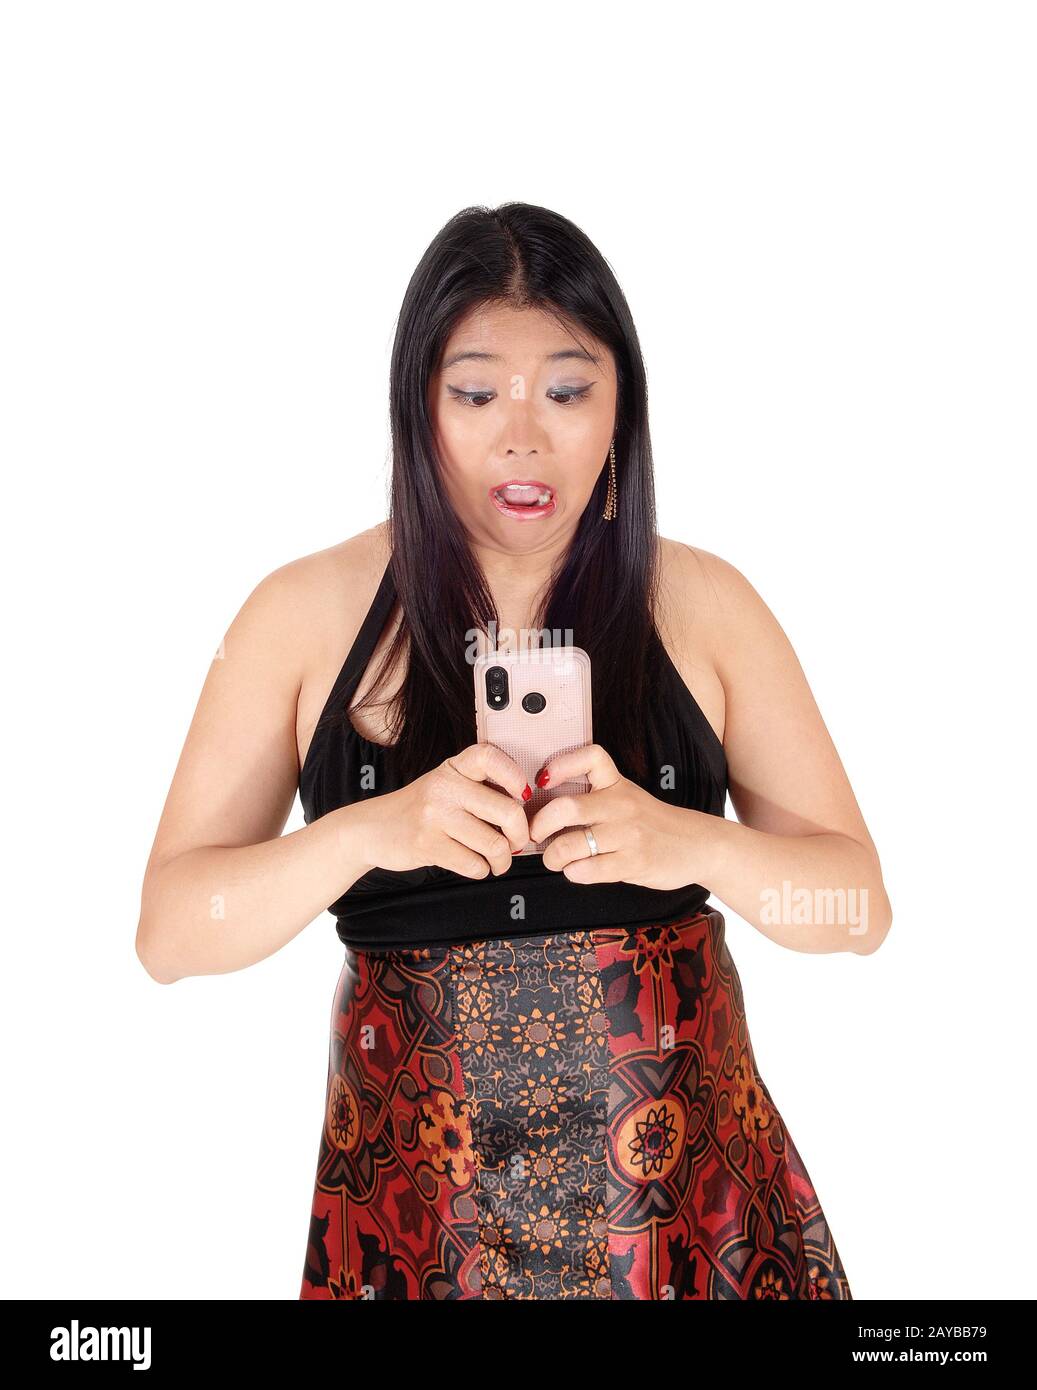 Ängstigend aussehende Frau bekam eine schockierende Nachricht auf dem Handy Stockfoto